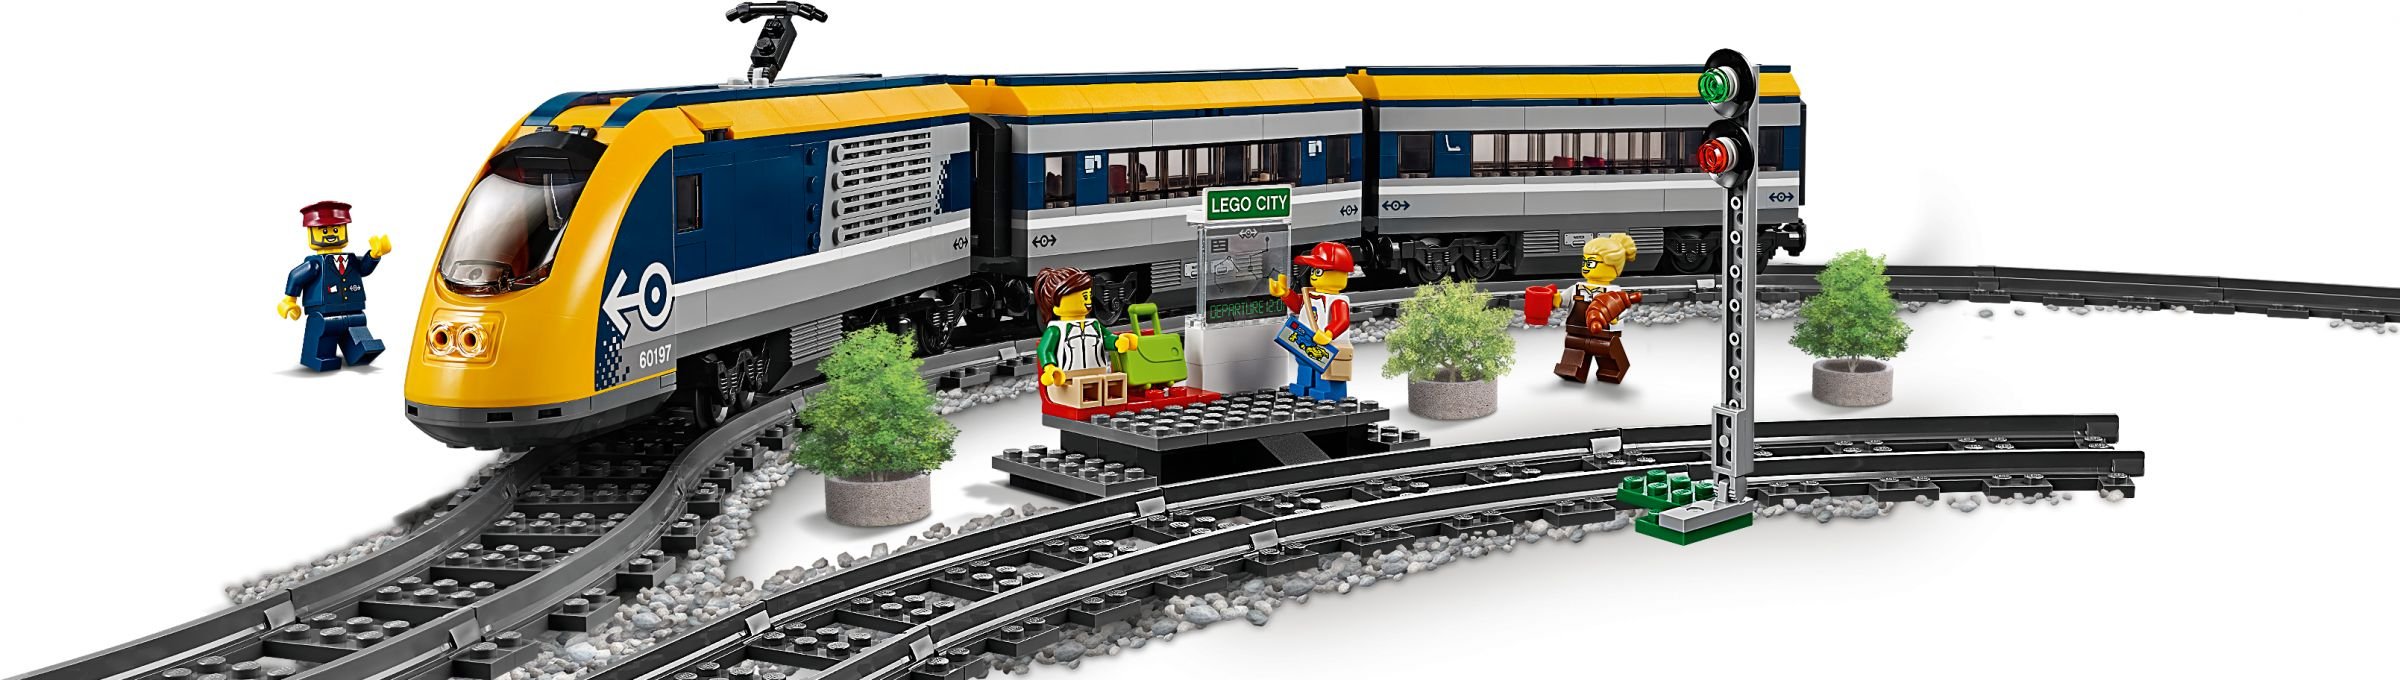 LEGO City 60197 Personenzug 60197_LEGO_City_Personenzug_Produkt.jpg